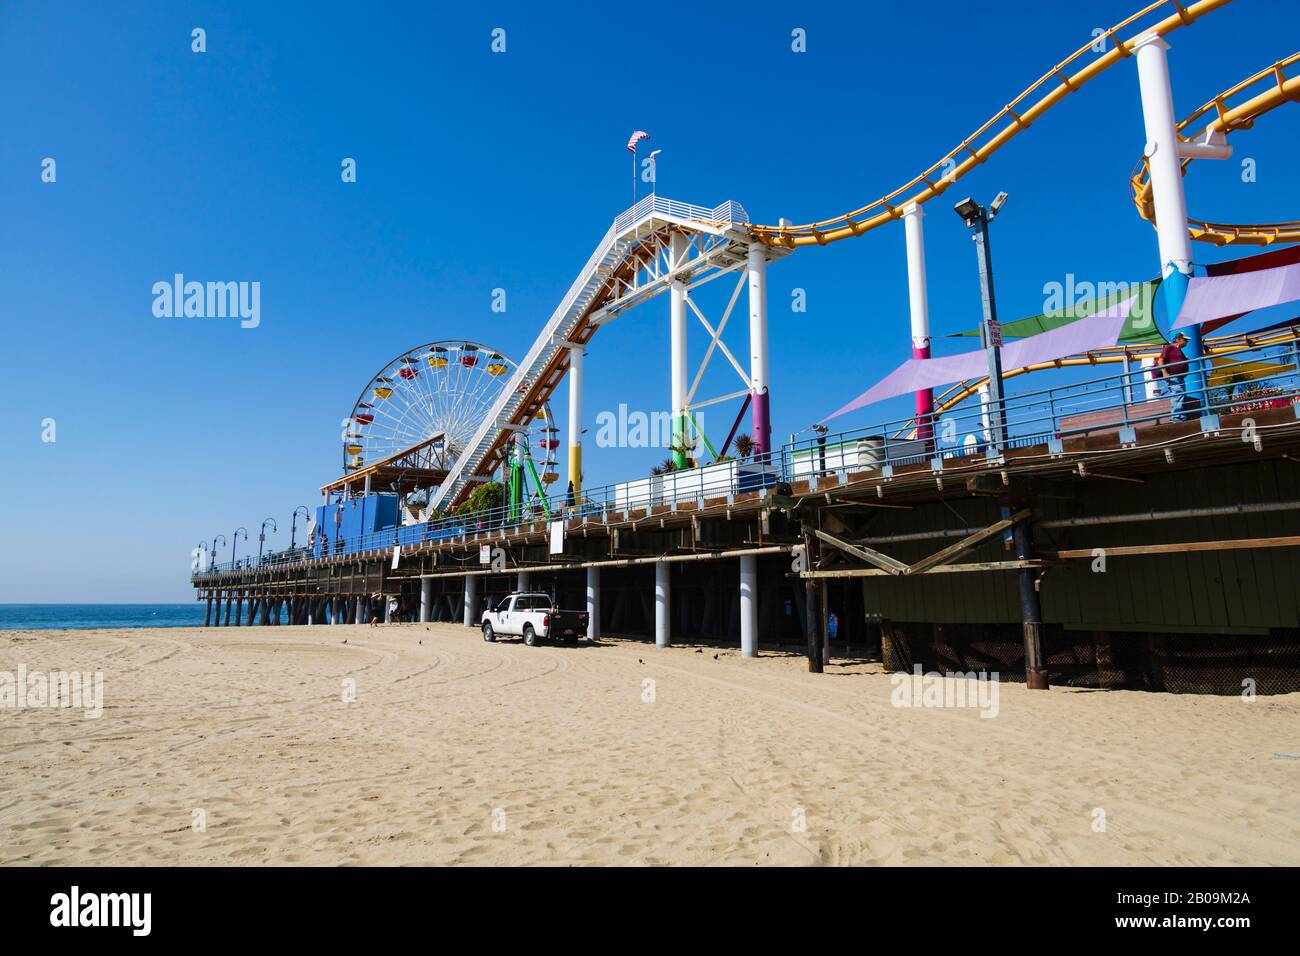 Große Rad- und Achterbahn-Vergnügungen am Santa Monica Pier, Los Angeles, Kalifornien, Vereinigte Staaten von Amerika Stockfoto